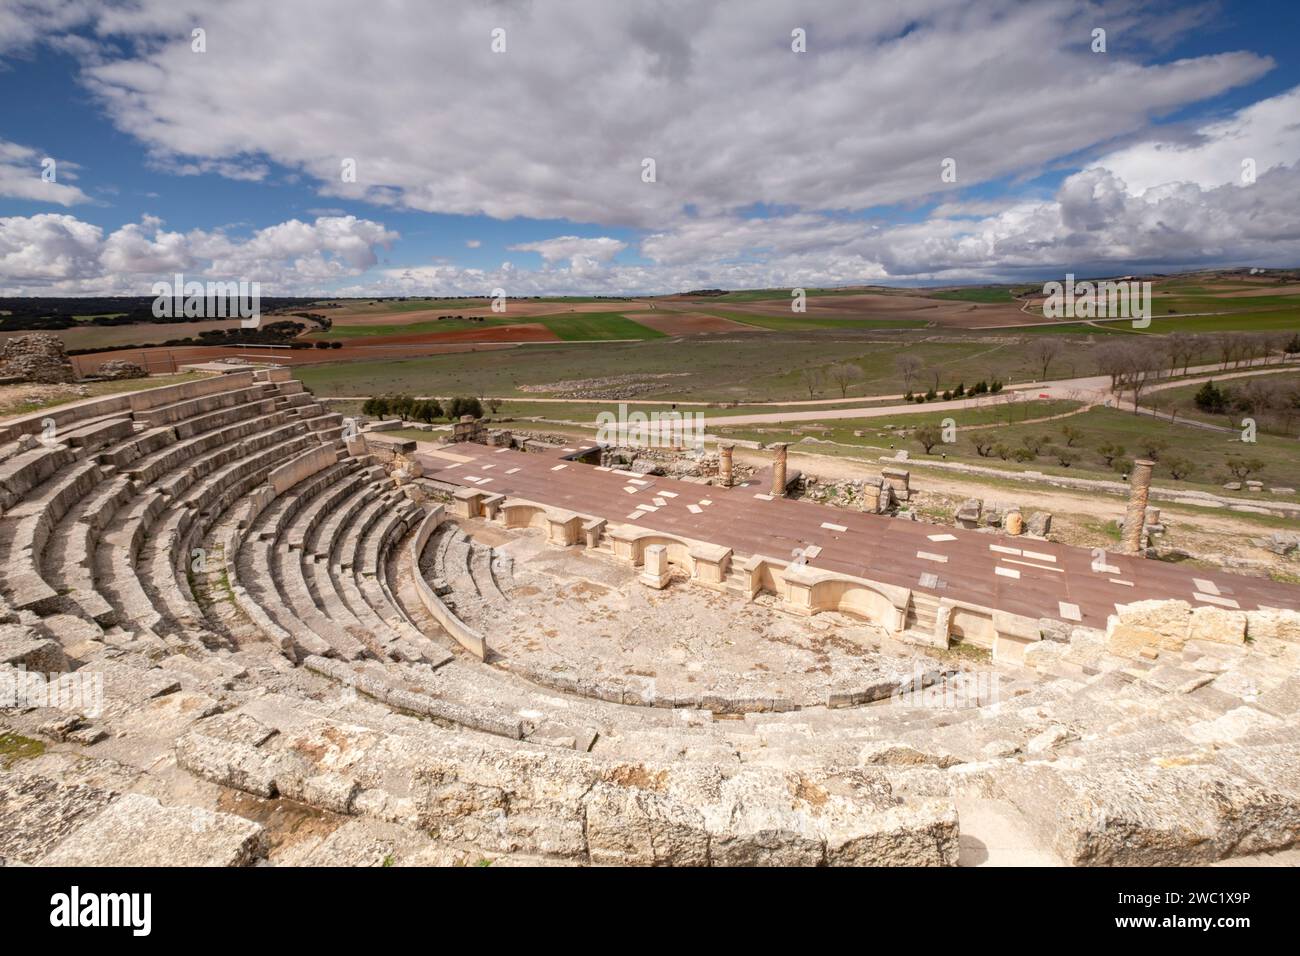 Teatro romano, parque arqueológico de Segóbriga, Saelices, Cuenca, Castilla-la Mancha, Espagne Banque D'Images